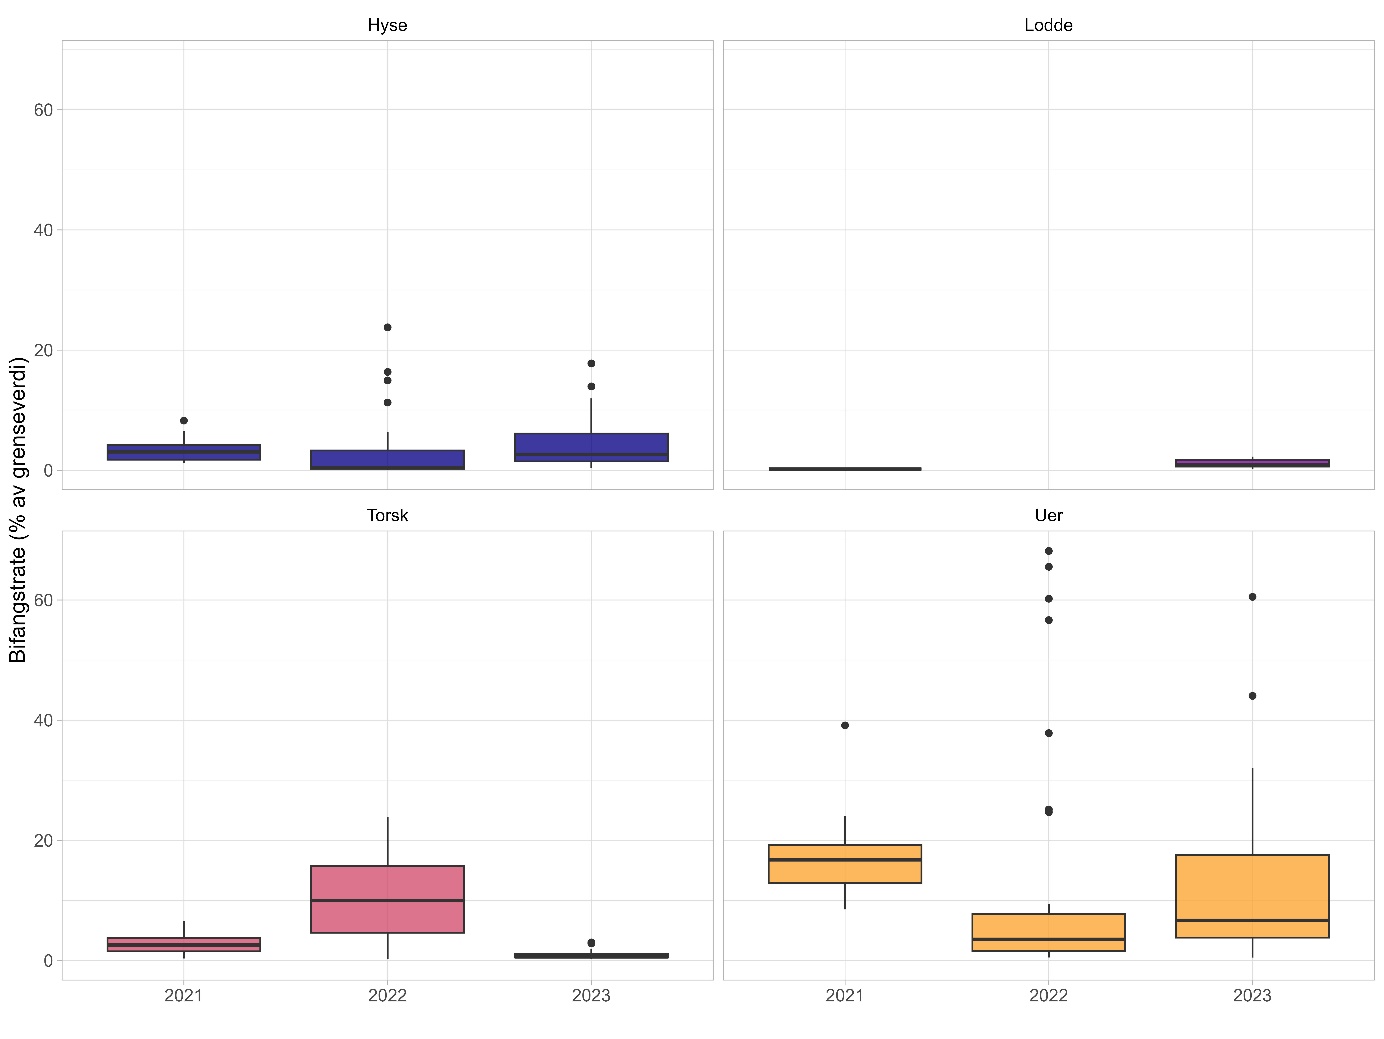 Figuren viser fire boksplott over bifangstraten per år (2021, 2022 og 2023) langs X-aksene, med data for Hyse øverst til venstre (mørk blå farge), Lodde øverst til høyre (lilla), Torsk nederst til venstre (rosa) og Uer nederst til høyre (oransje). Y-aksene viser Bifangstrate (% av grenseverdier fastsatt av Fiskeridirektoratet) og går fra 0 til 70 %. Bifangsten av torske-, hyse- og ueryngel lå alle langt under grenseverdiene for alle de tre årene, det samme gjorde antall lodde  i rekefangstene